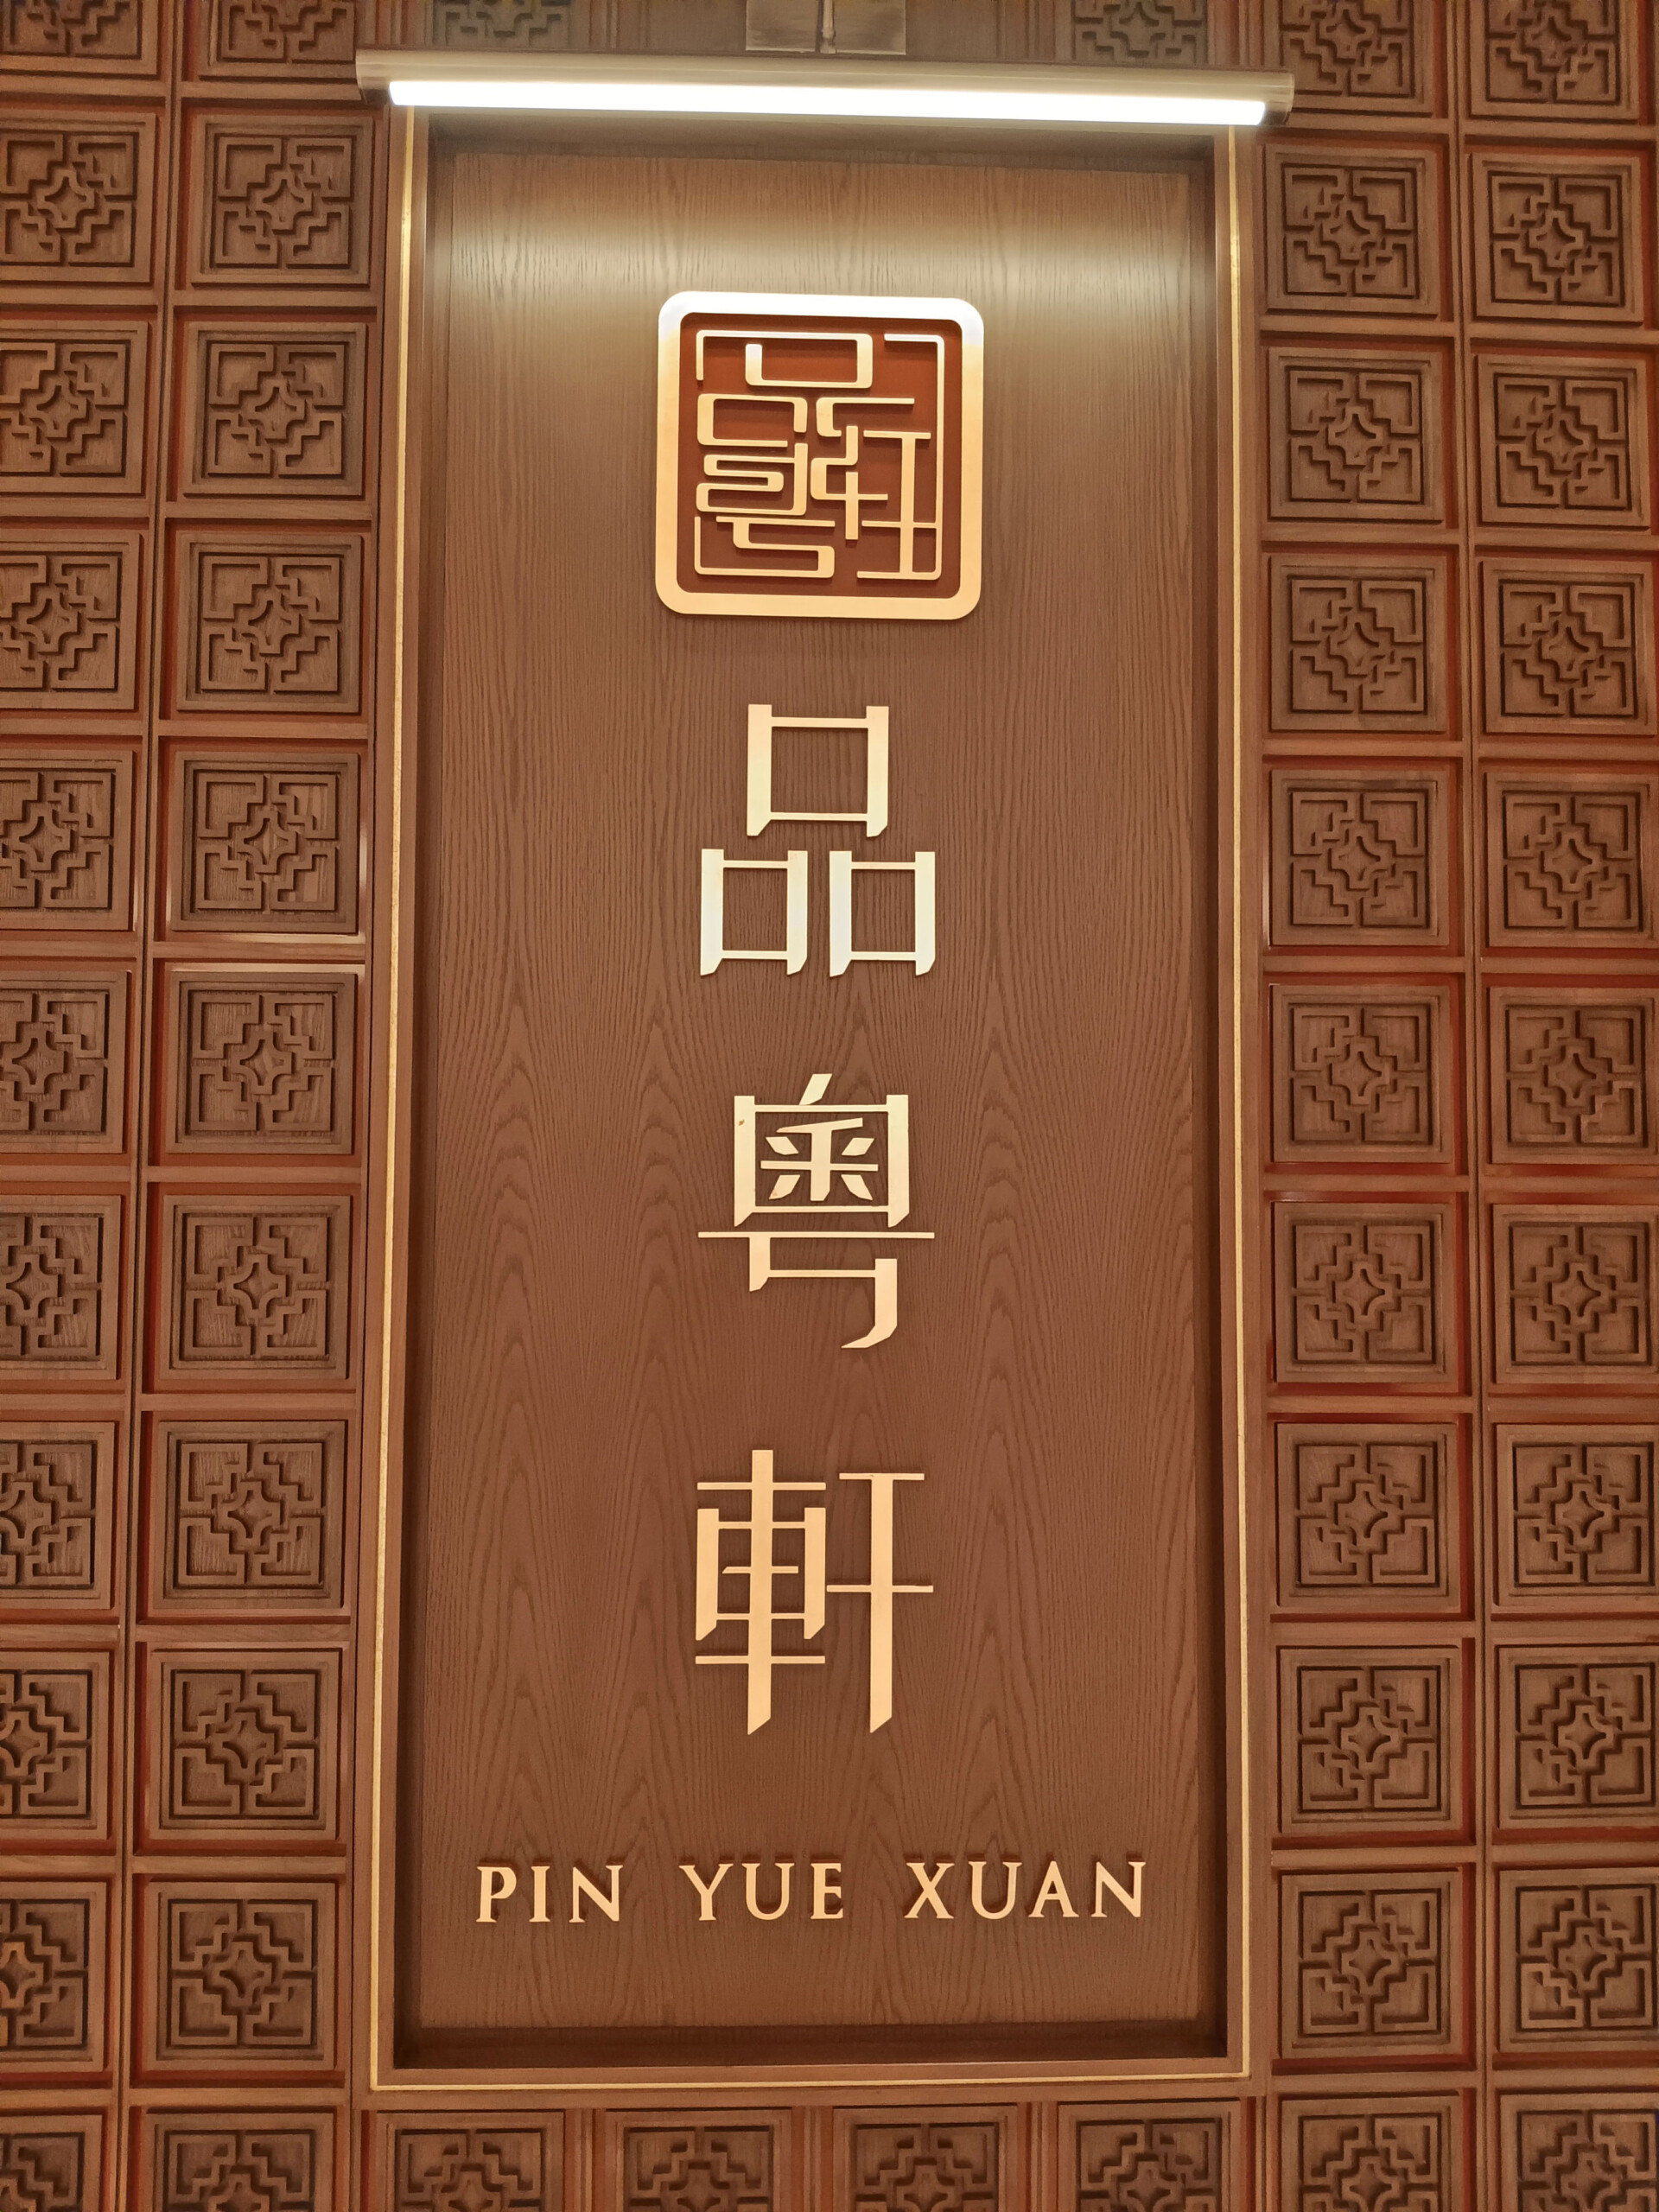 Pin Yue Xuan restaurant sign